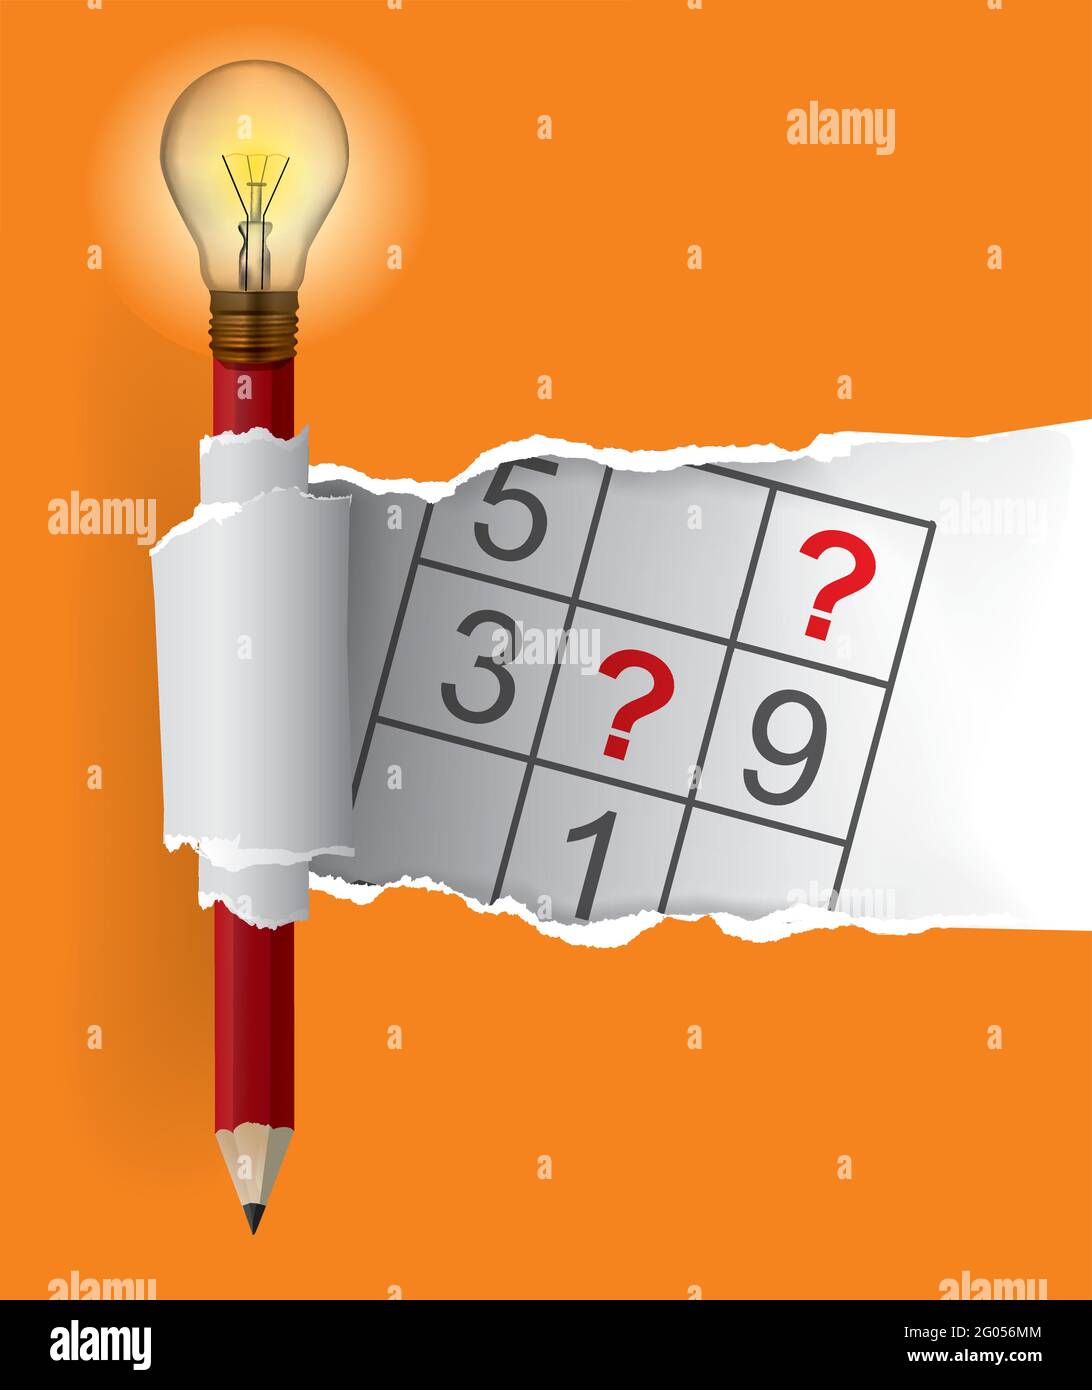 Smart Pencil mit Glühbirne und Sudoku, zerrissenes Papier. Illustration eines orangefarbenen zerrissenen Papierhintergrunds mit verspieltem Sudoku-Motiv. Vektor verfügbar Stock Vektor